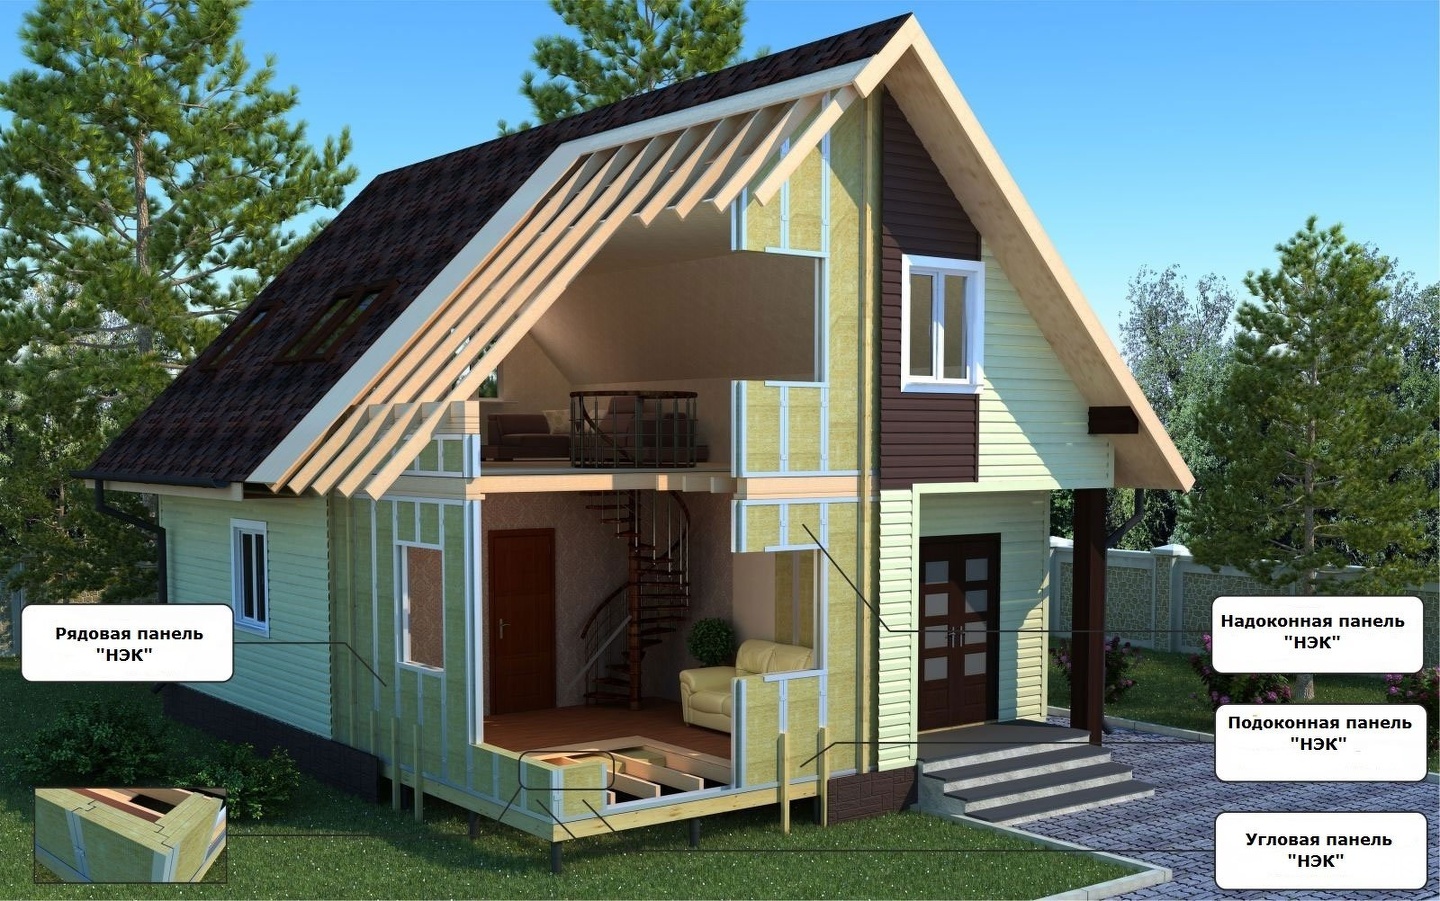 Нюансы проектирования каркасных домов круглогодичного проживания: выбор этажности проекта